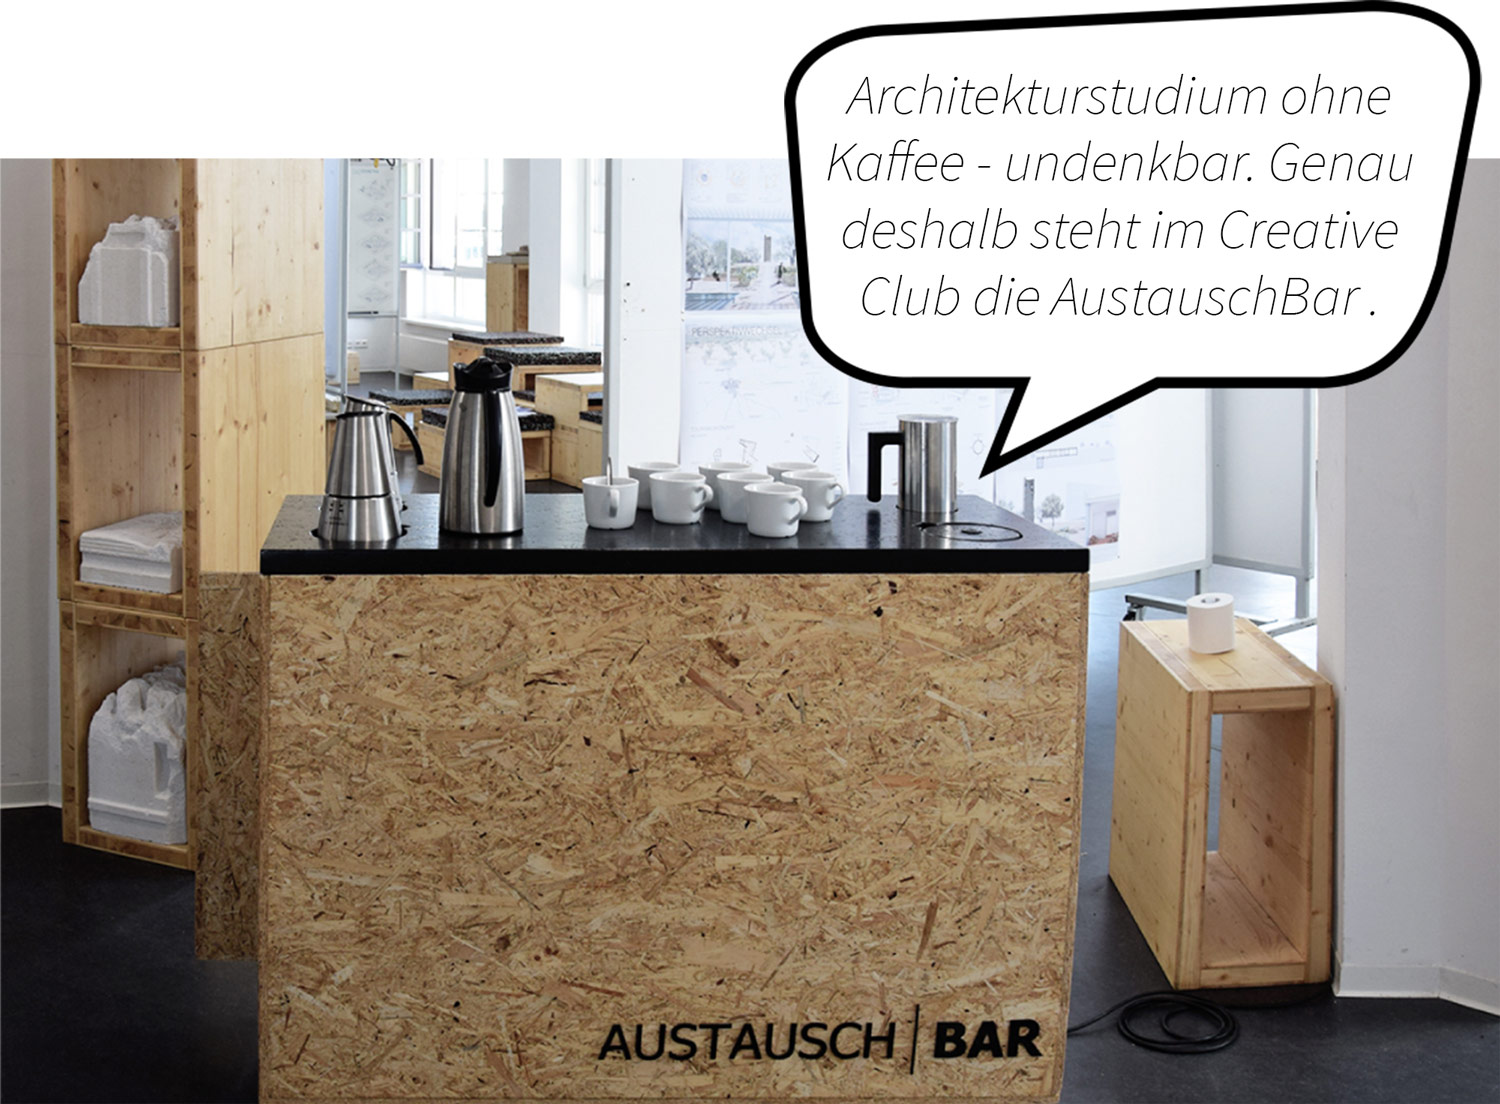 Selbstgebauter Tresen mit Kaffekannen und Kaffeegeschirr. Sprechblaentext: Architekturstudium ohne Kaffee - undenkbar. Genau deshalb steht im Creative Club die Austauschbar.